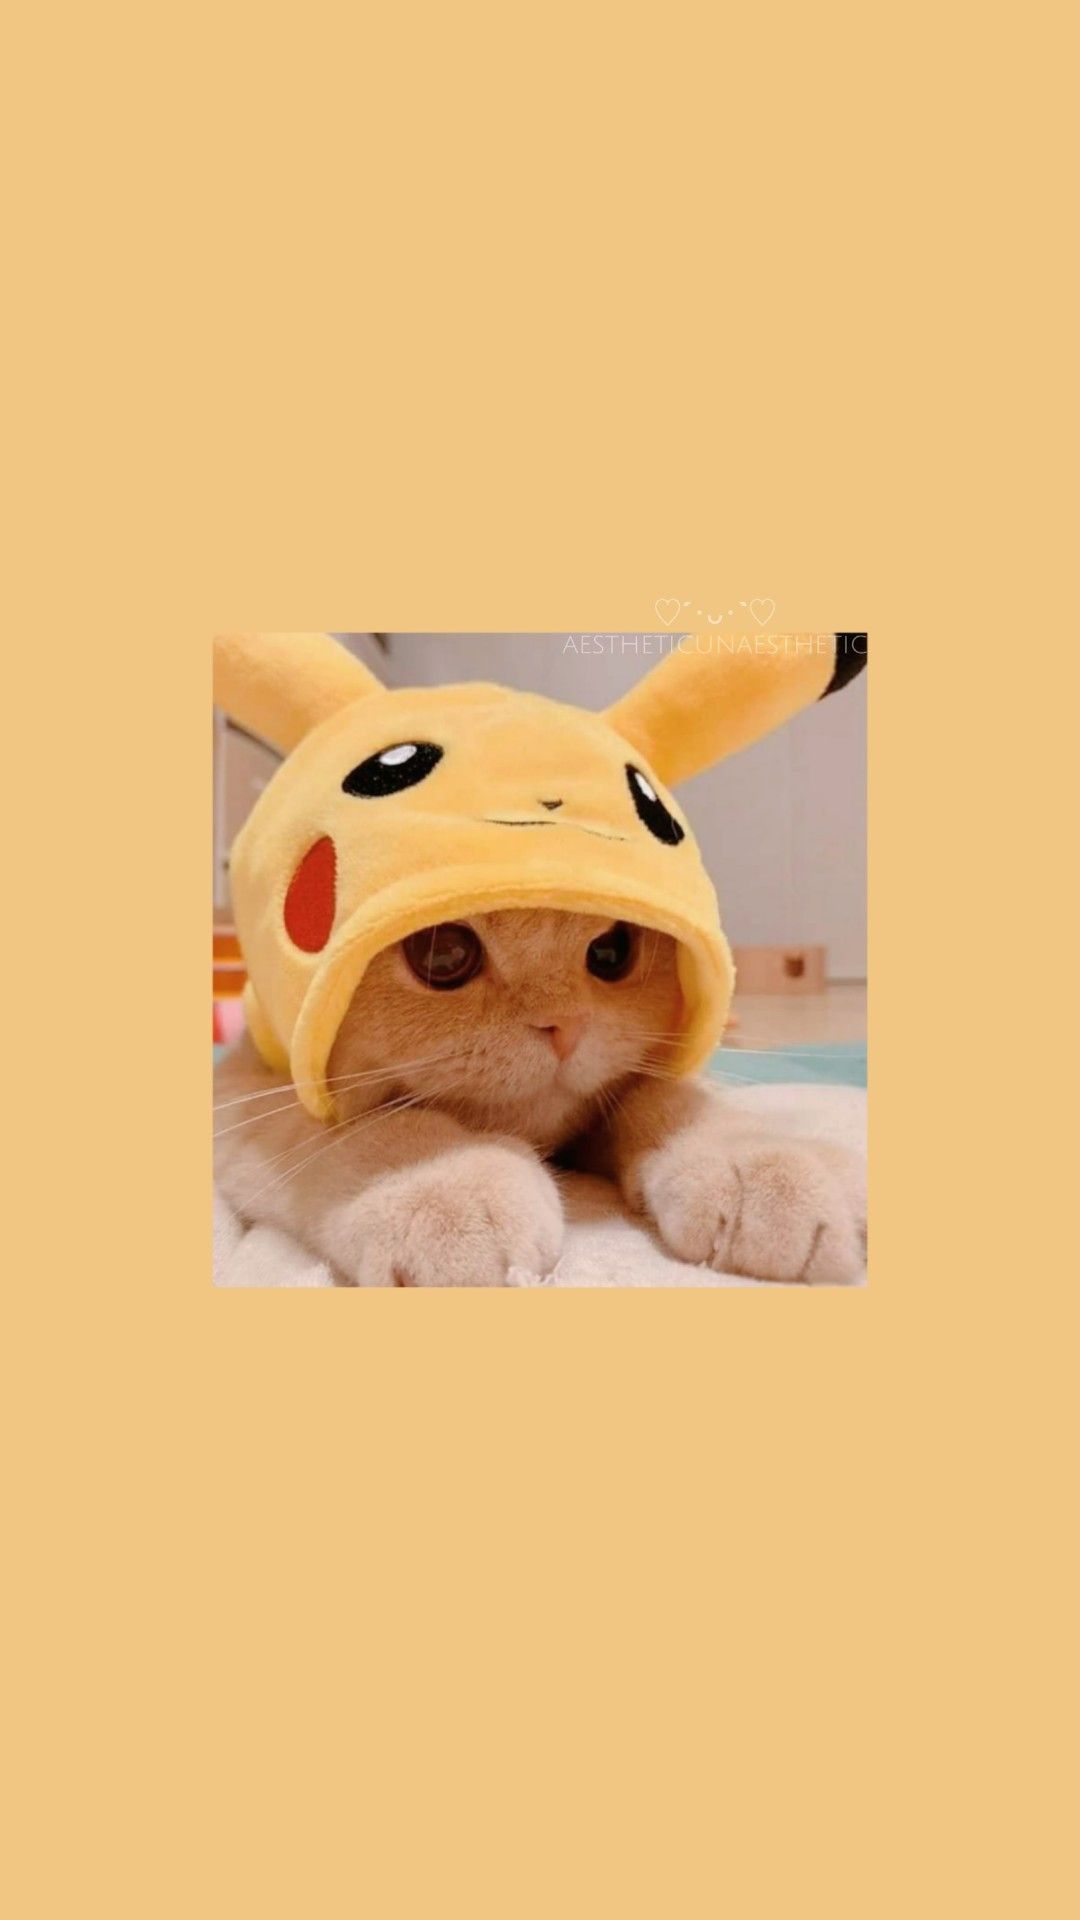 A cat wearing pikachu hat - Cat